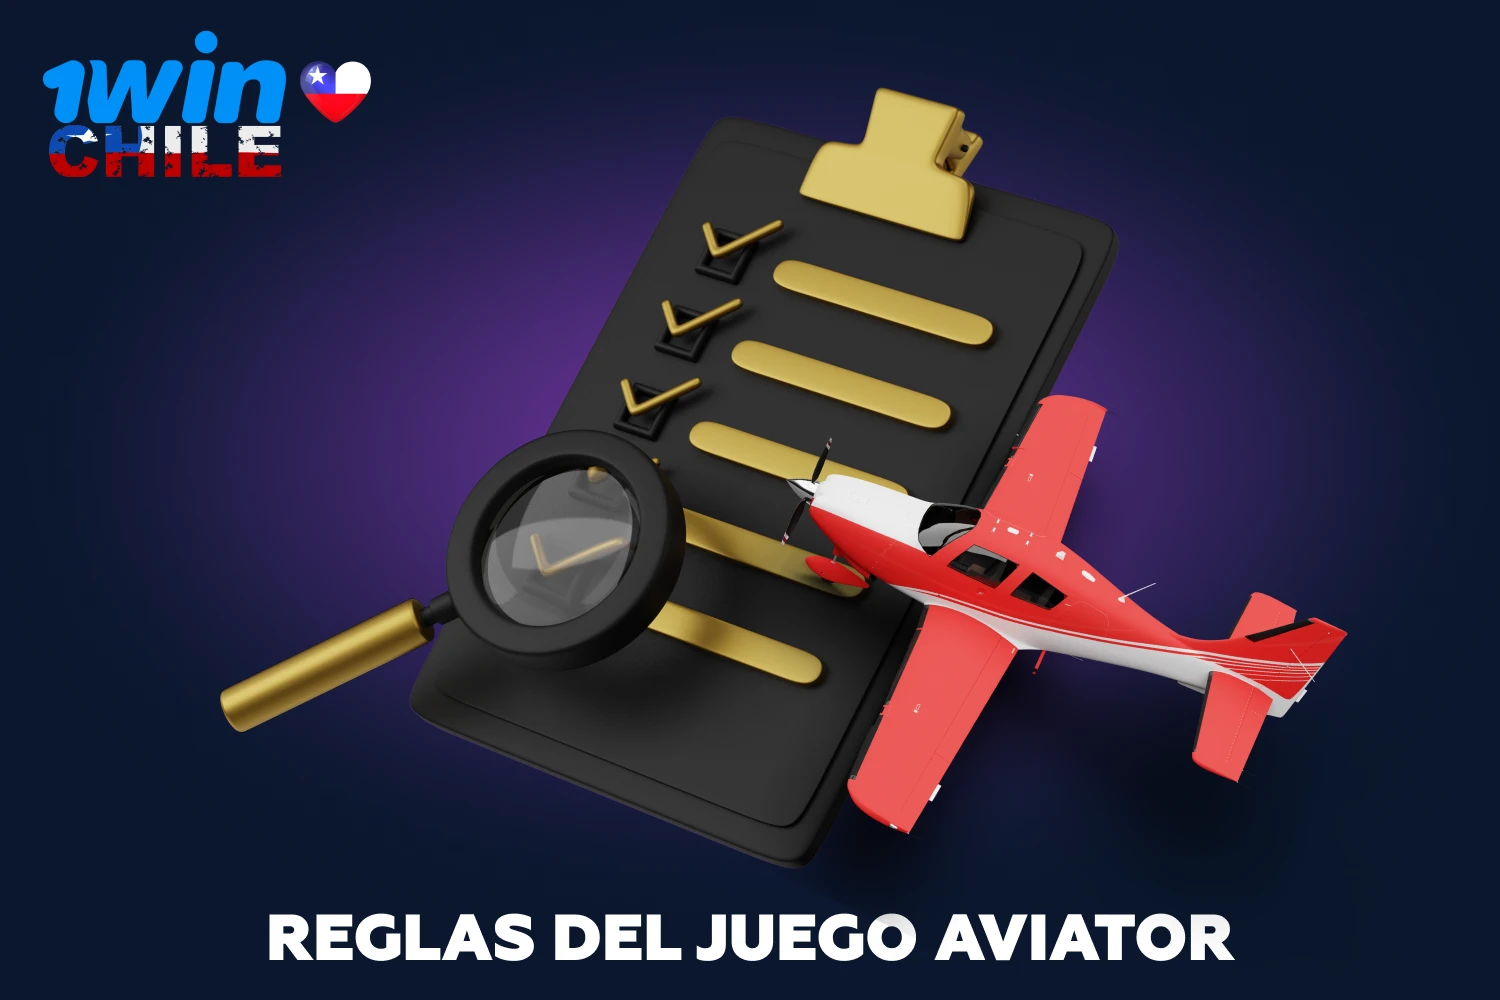 Aviator 1win tiene reglas muy sencillas, por eso es tan popular entre los jugadores de Chile